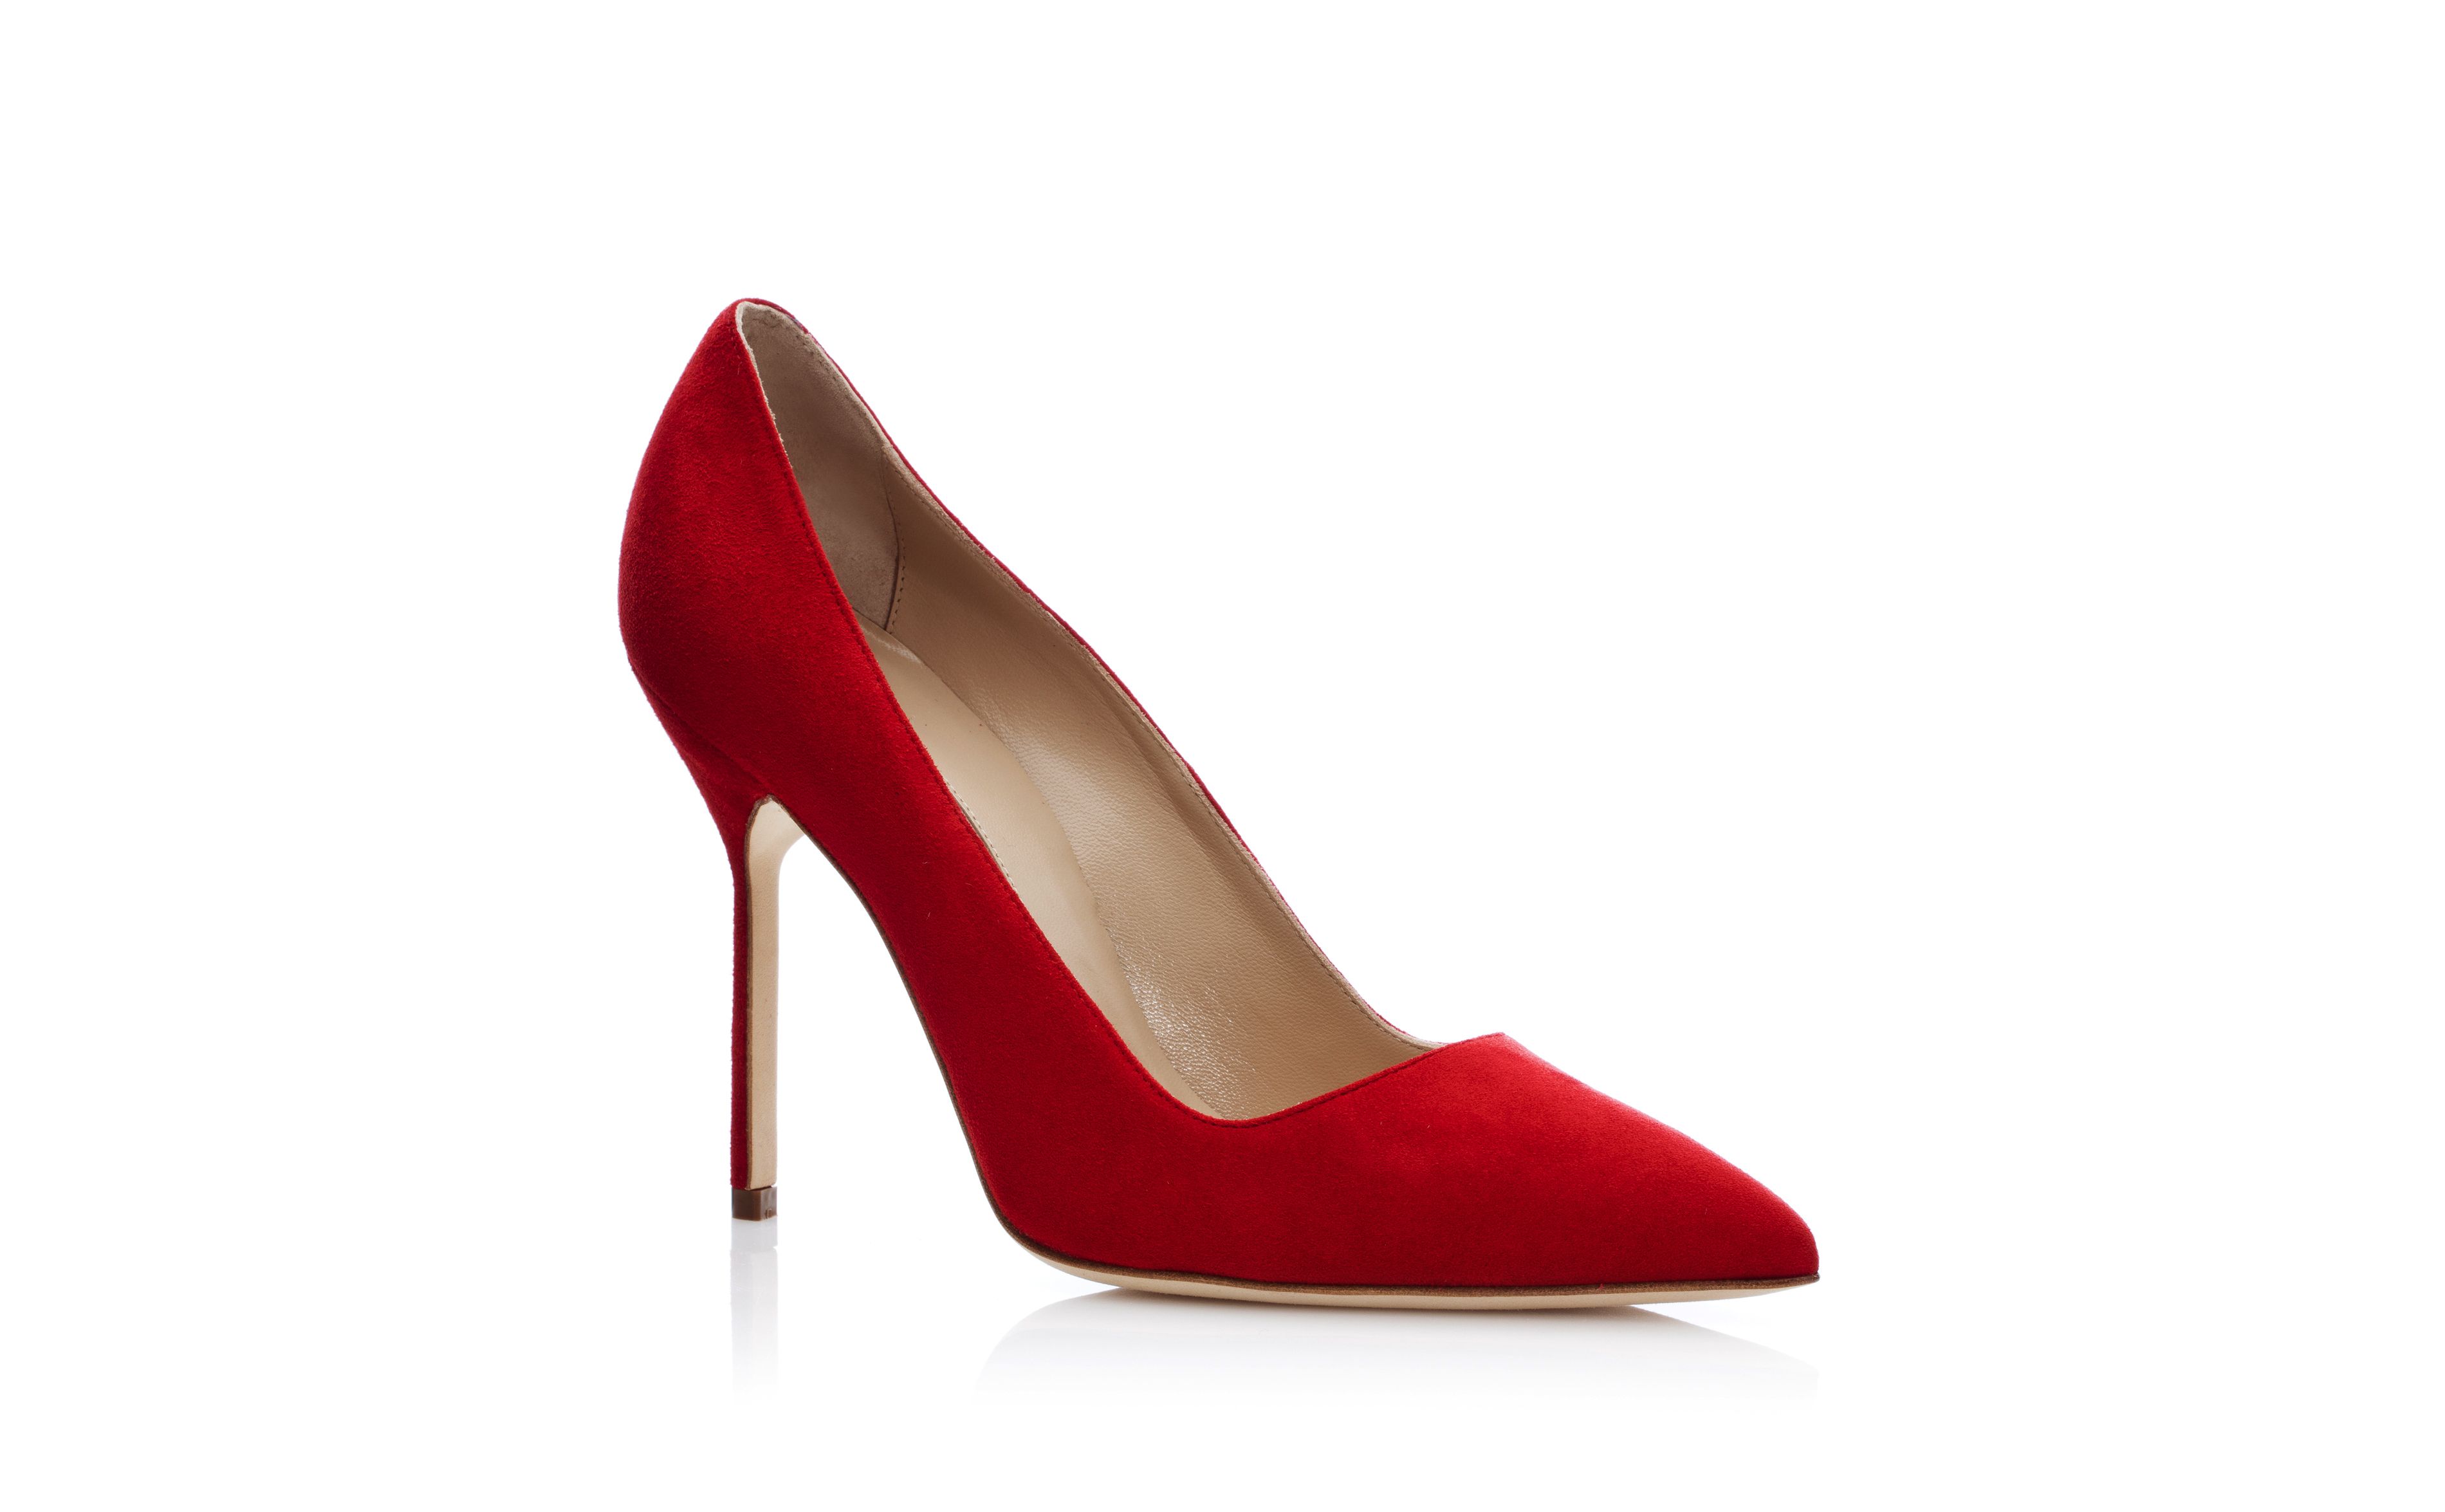 Women's Red High Heels